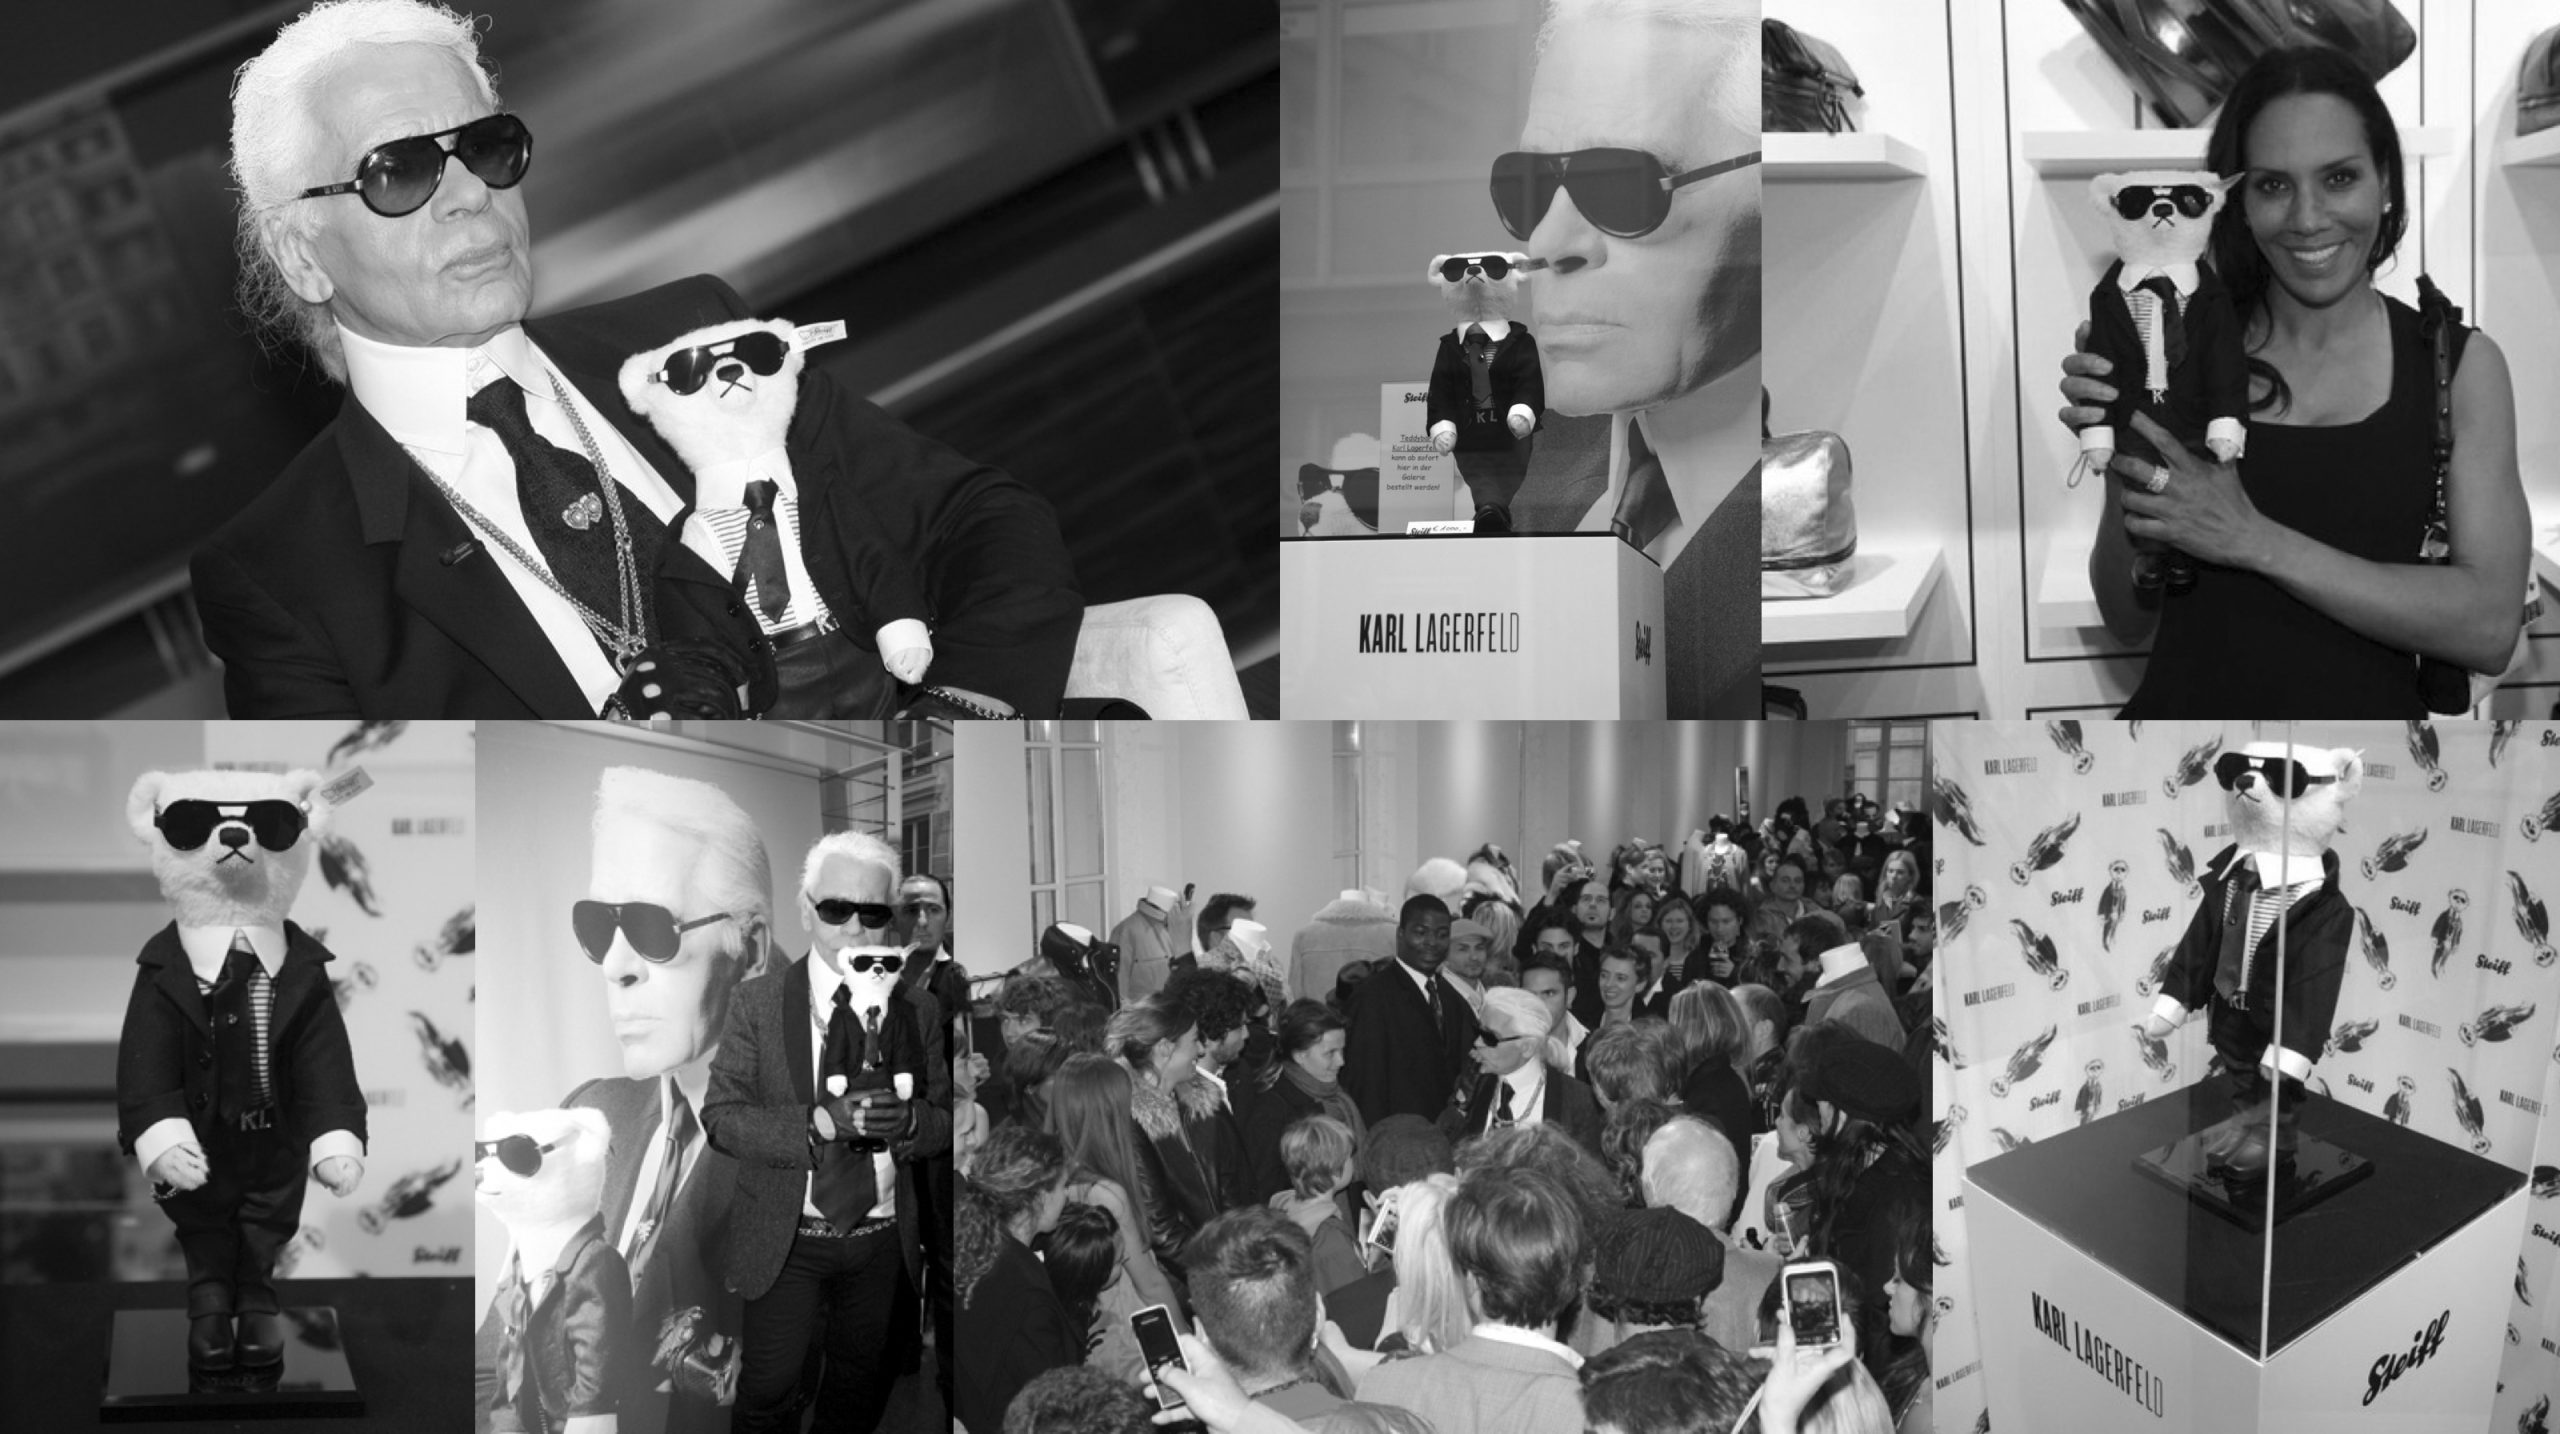 Bilder Collage vom Launch des Karl Lagerfeld Steiff Tieres für Steiff PR-Coup und Brand Positioning